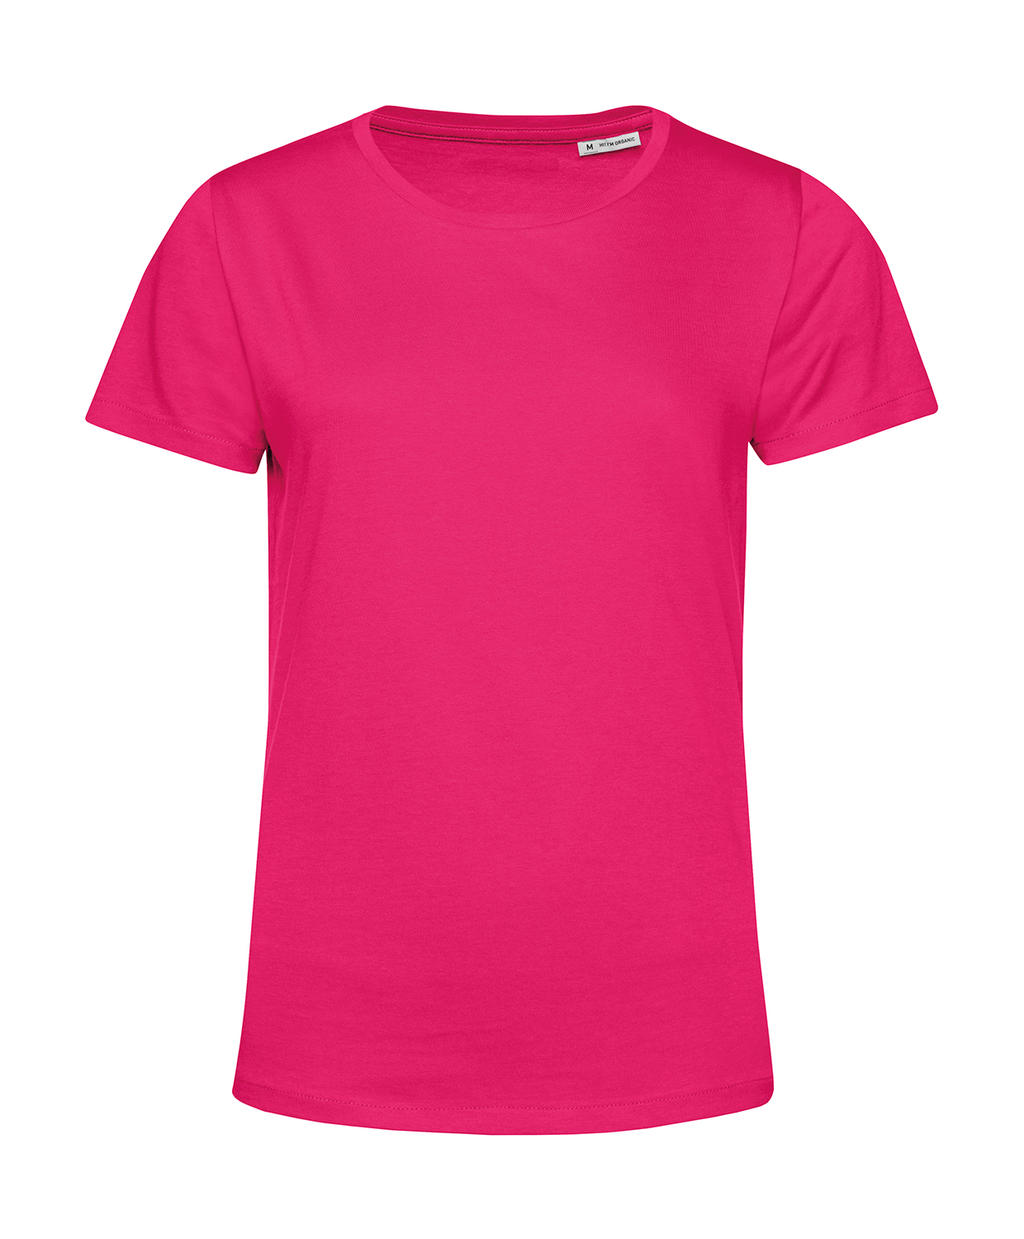 Tričko dámské BC Organic Inspire E150 - tmavě růžové, XXL